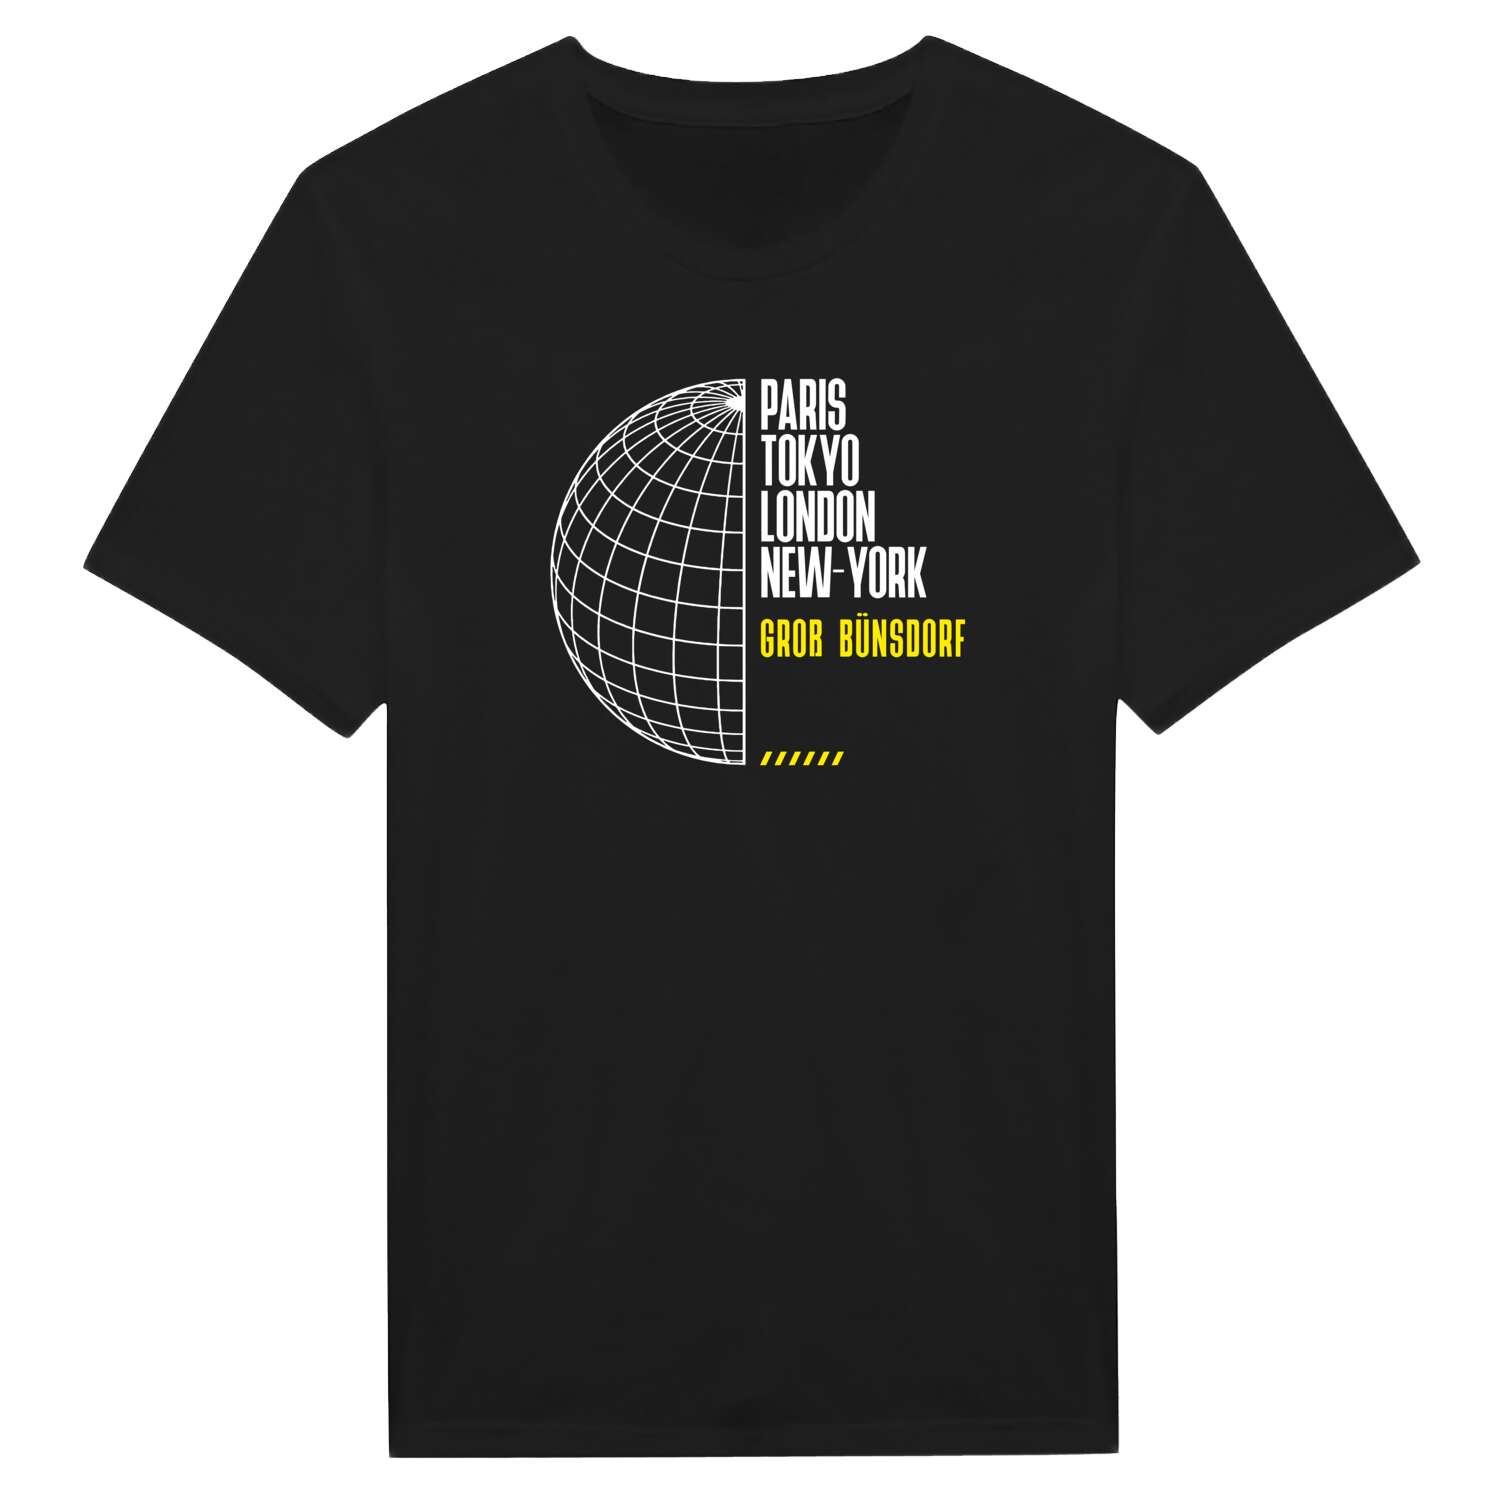 Groß Bünsdorf T-Shirt »Paris Tokyo London«